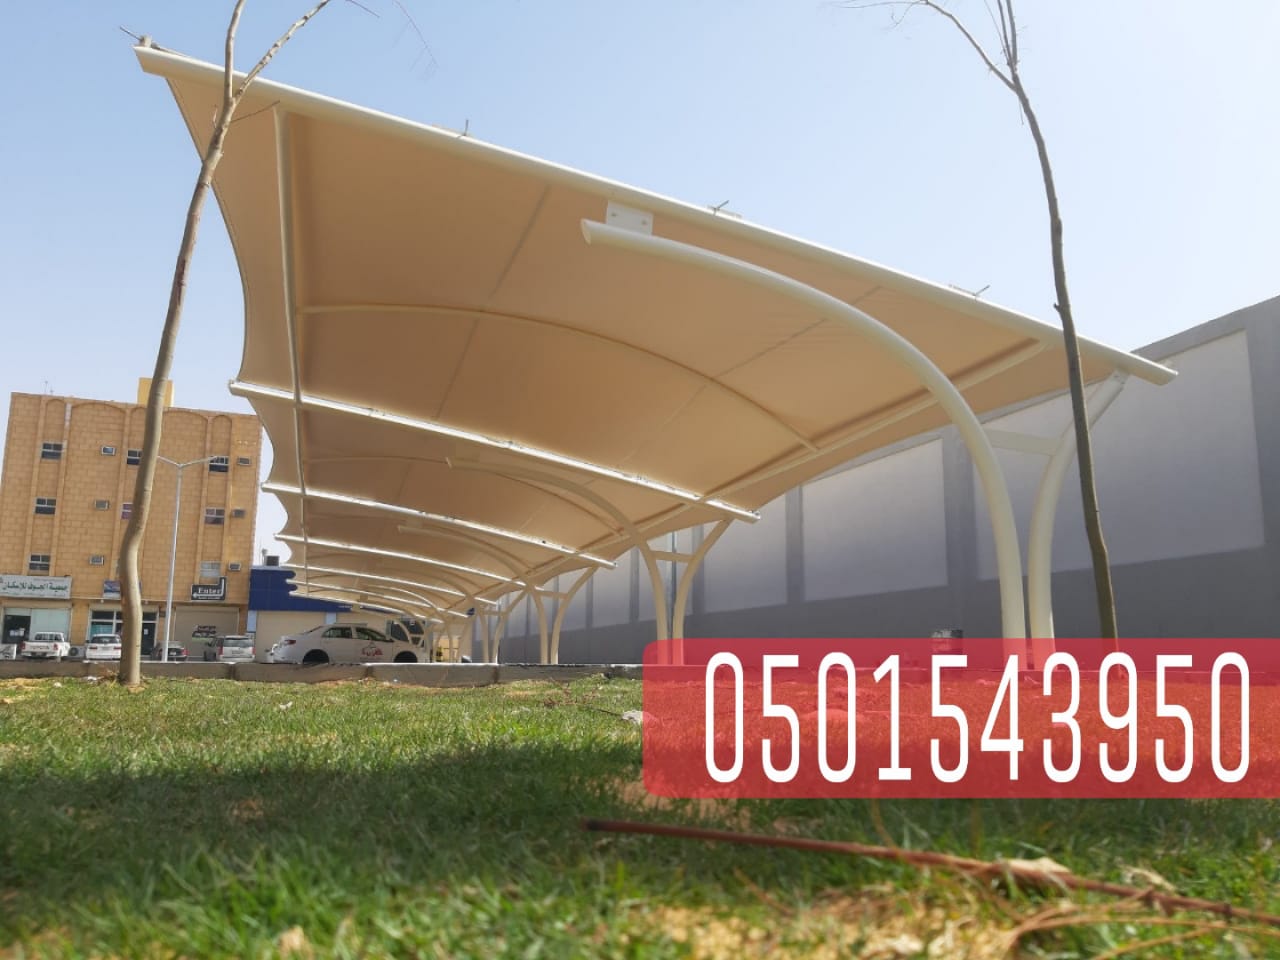 تركيب مظلات سيارات بأجود الخامات في جدة , 0501543950